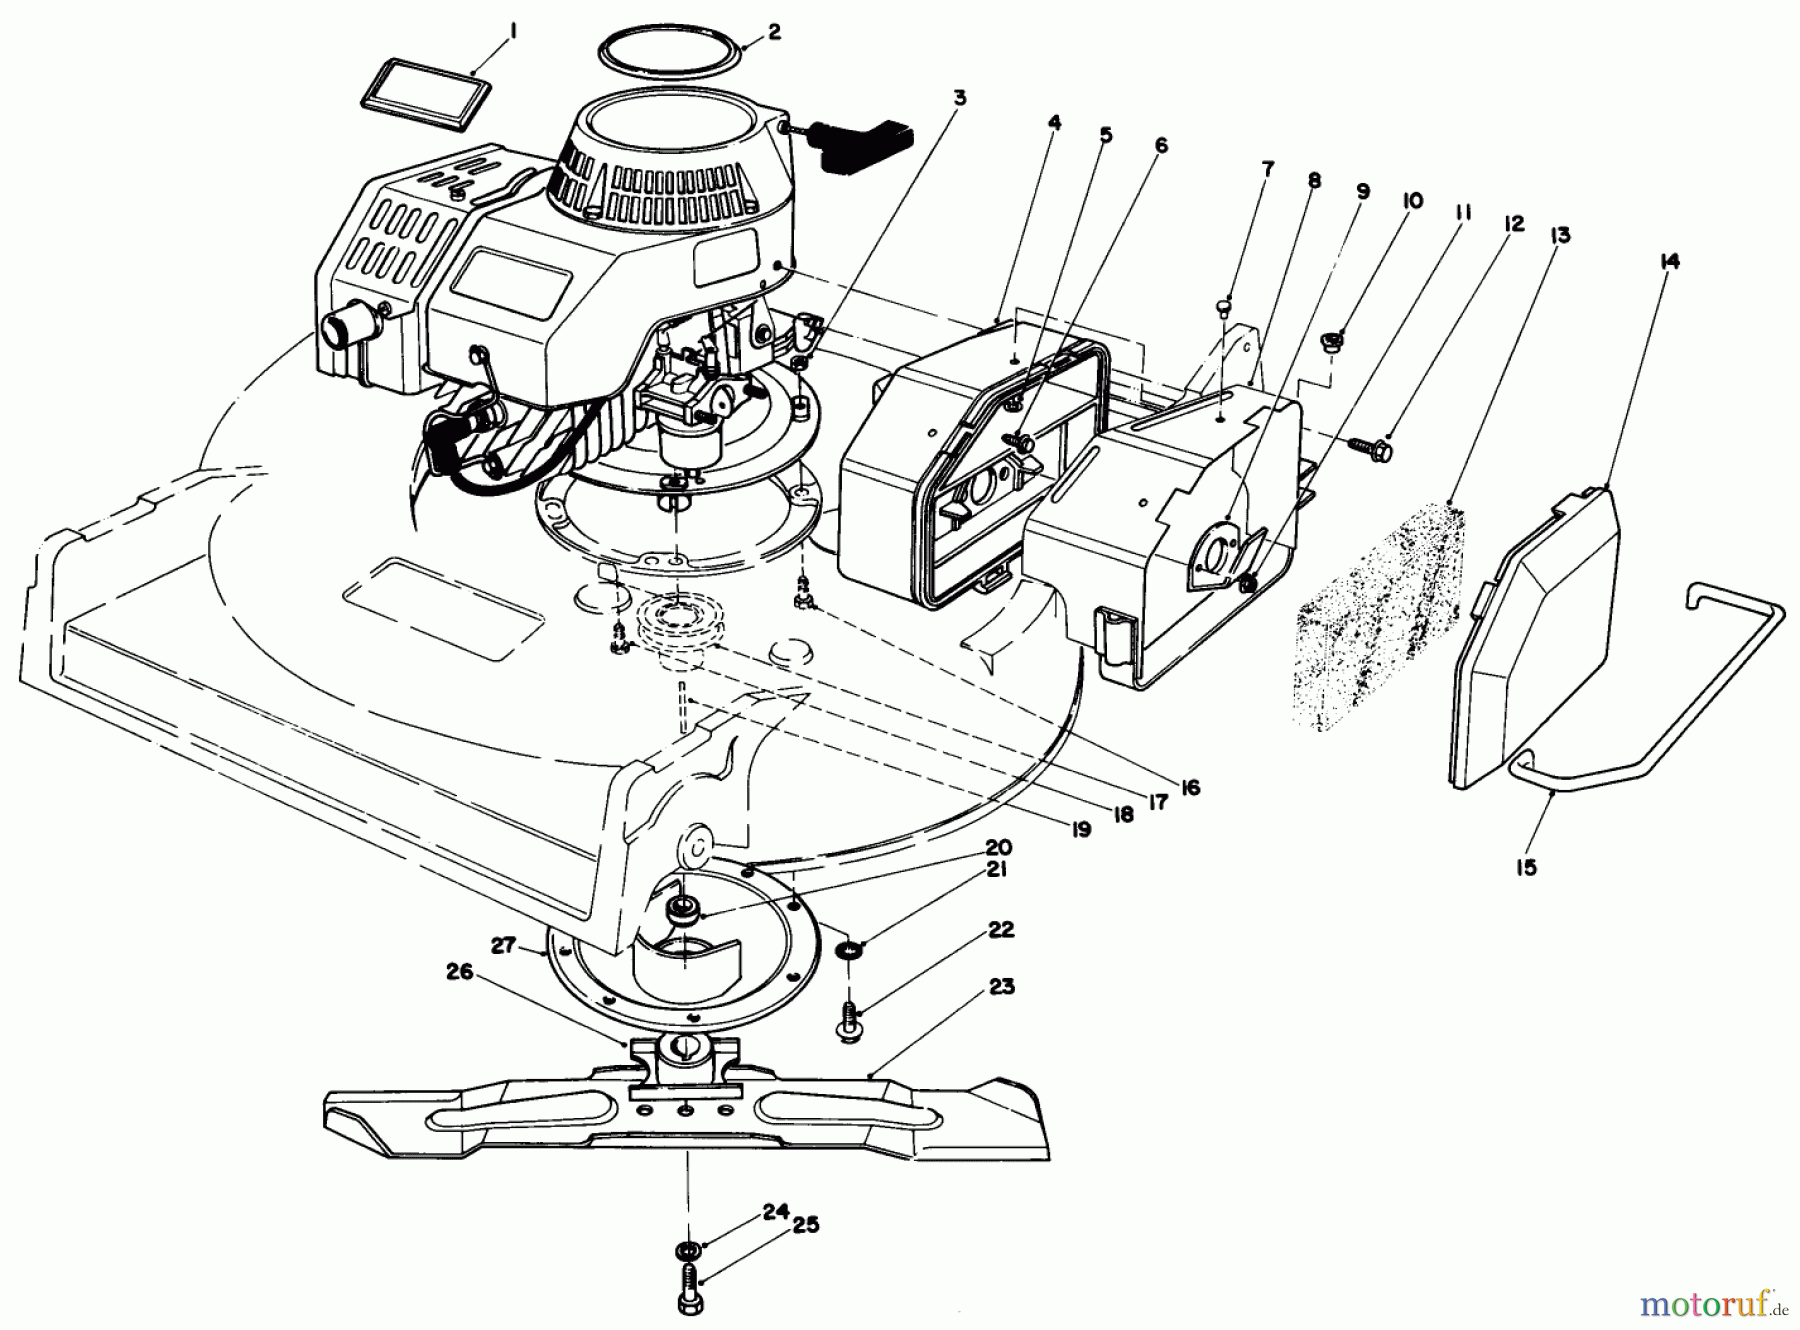  Toro Neu Mowers, Walk-Behind Seite 2 22030 - Toro Lawnmower, 1986 (6000001-6999999) ENGINE ASSEMBLY (MODEL 22035)